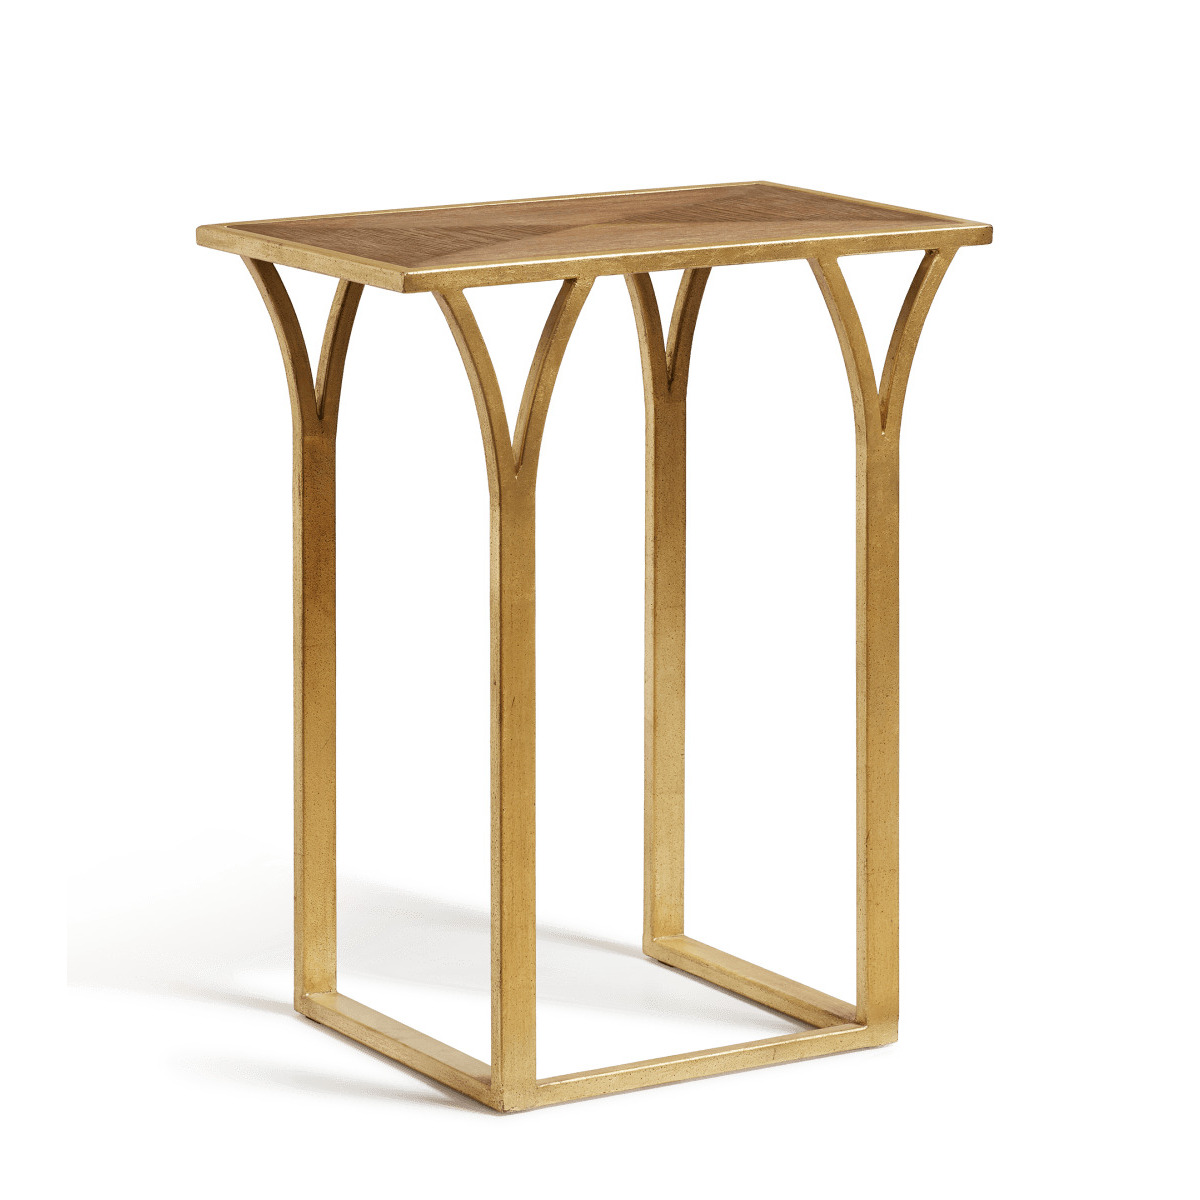 OKA, Almondell Side Table - Natural, Side Tables, Iron/MDF Wood/Veneer